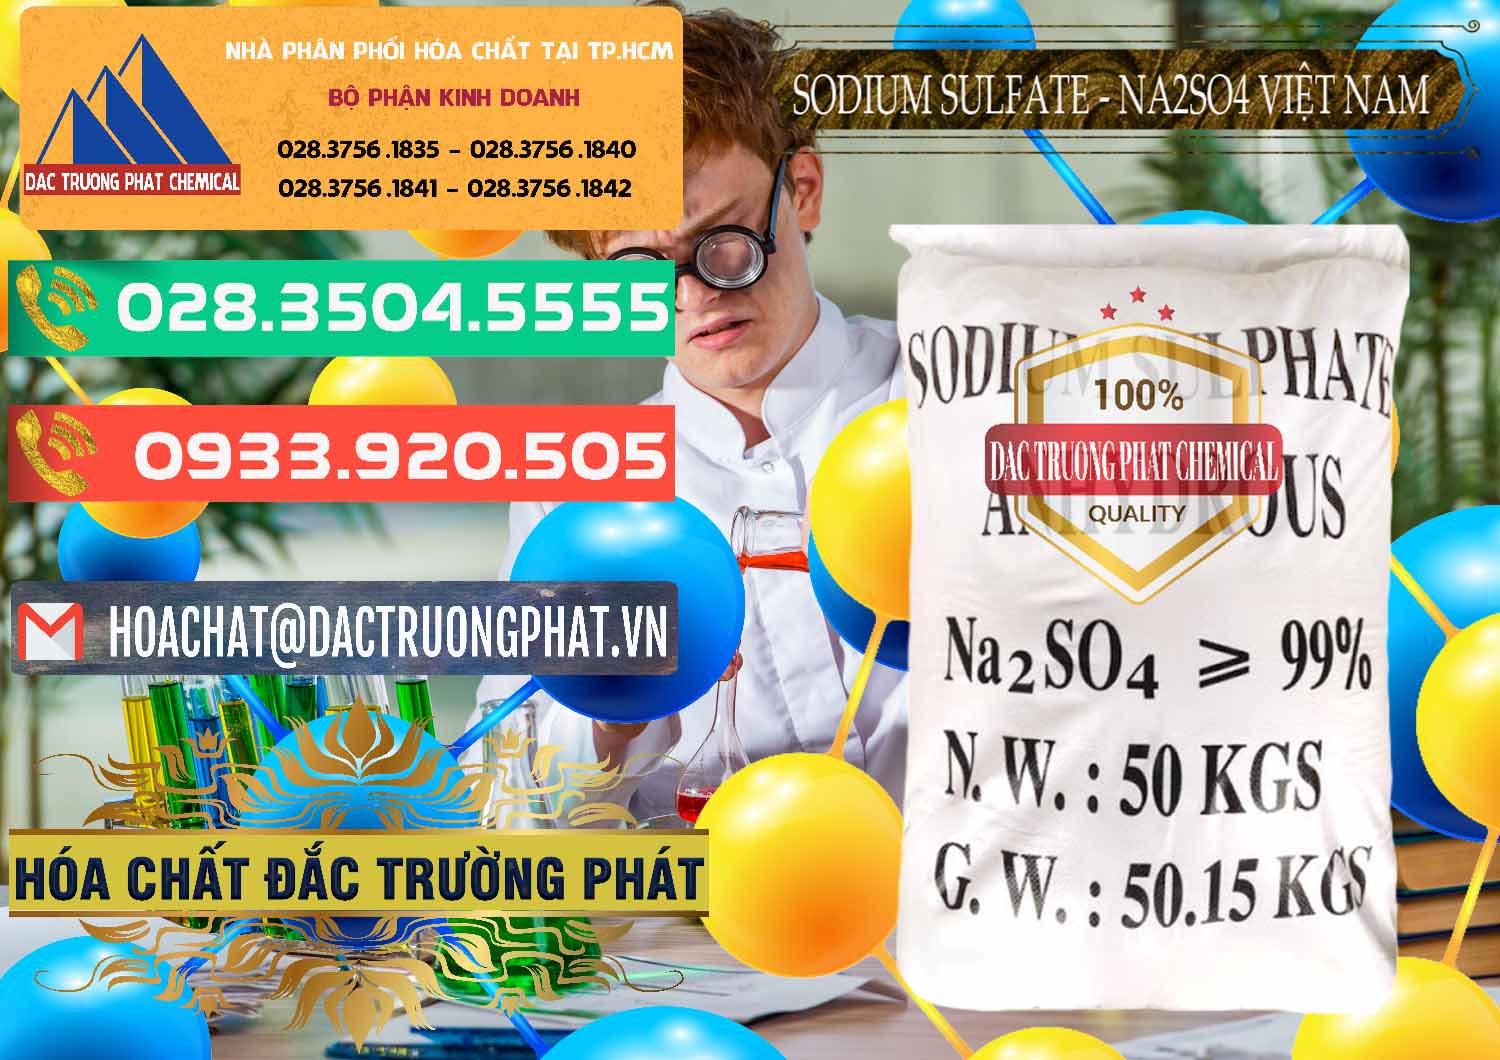 Chuyên cung cấp và phân phối Sodium Sulphate - Muối Sunfat Na2SO4 Việt Nam - 0355 - Cty chuyên phân phối & kinh doanh hóa chất tại TP.HCM - congtyhoachat.com.vn